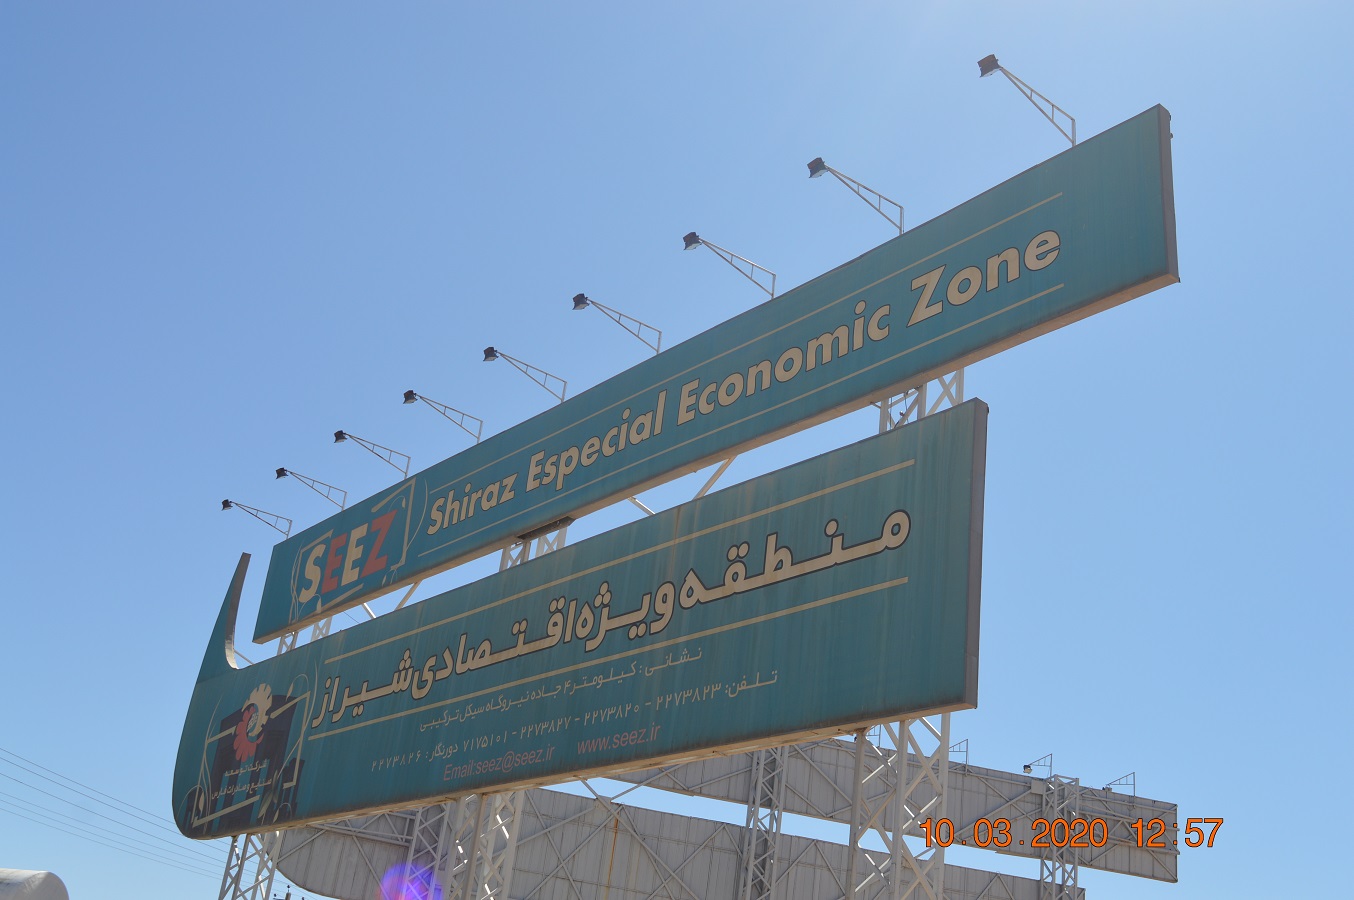 منطقه ویژه اقتصادی شیراز